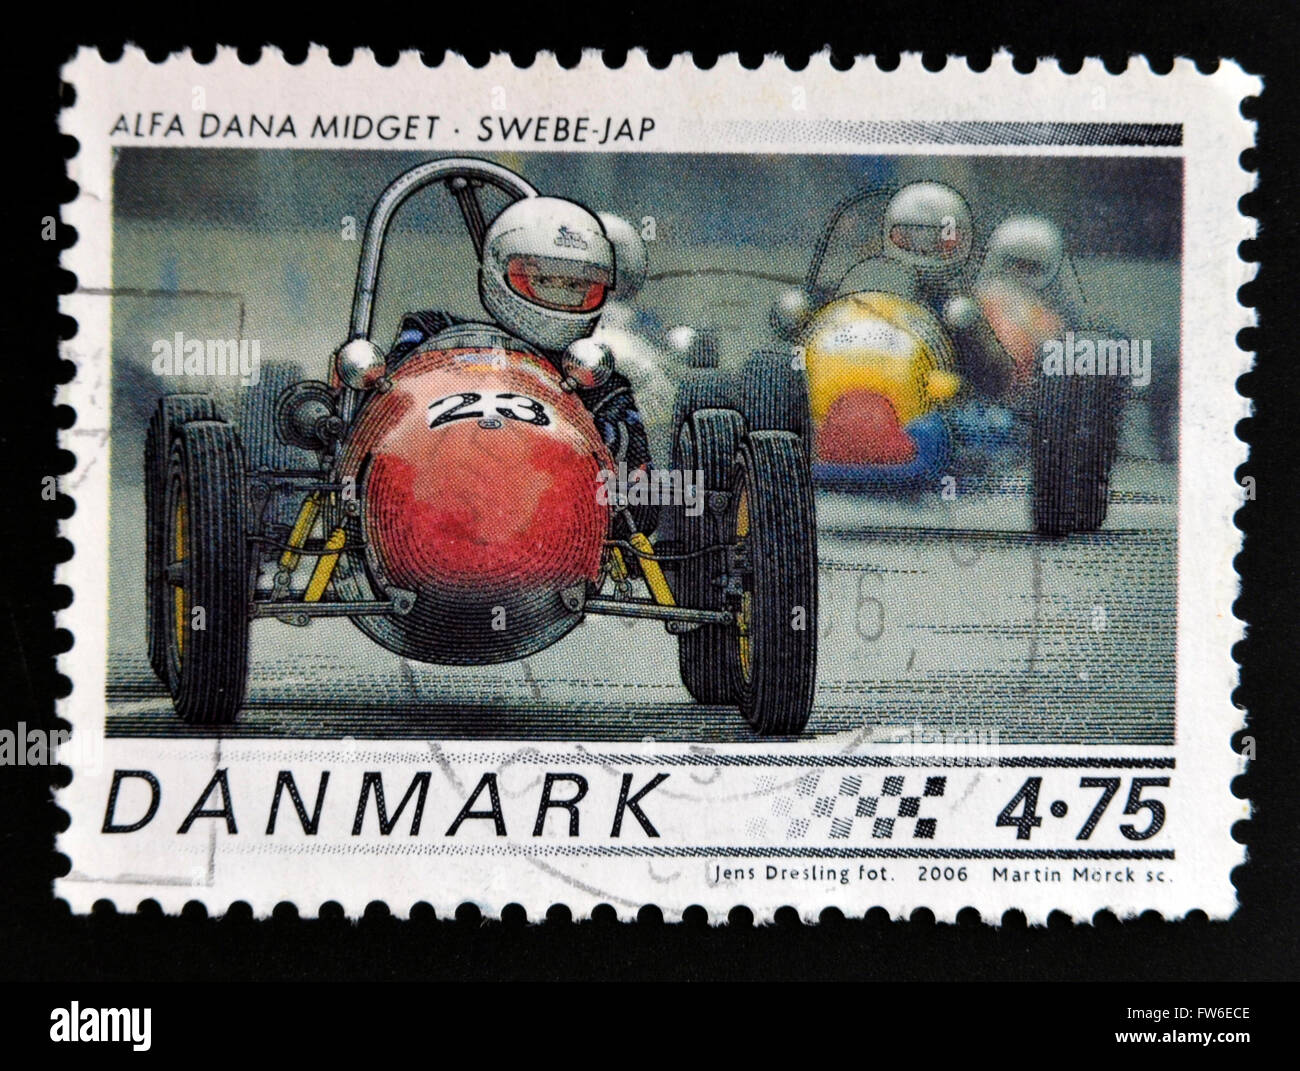 DENMARK - CIRCA 2006: A stamp printed in Denmark shows 1958 Alfa Dana Midget, Swebe - JAP, circa 2006. Stock Photo